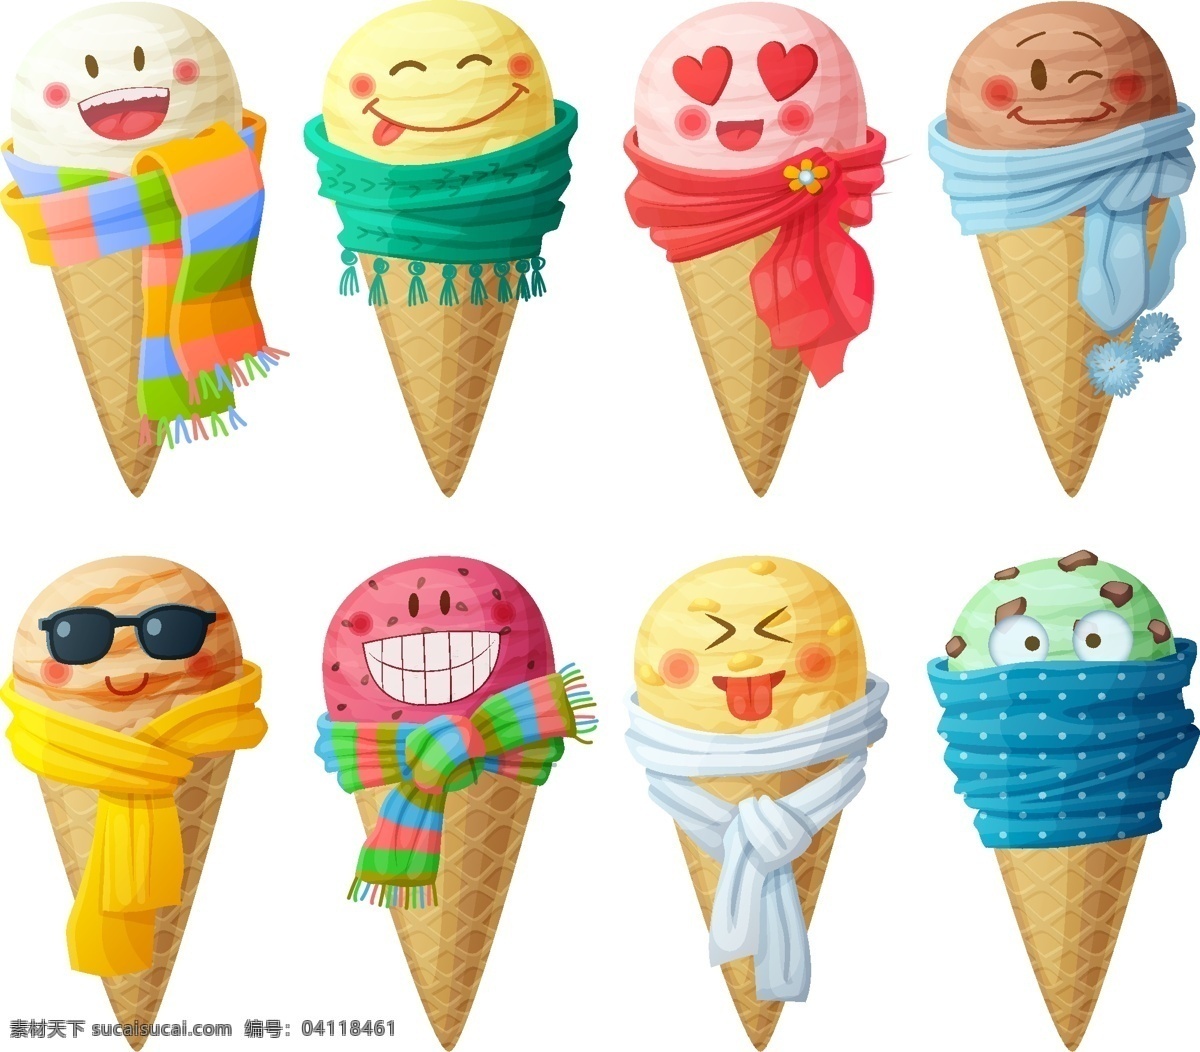 可爱 卡通 冰淇淋 矢量 插画 冰淇淋插画 可爱冰淇淋 卡通冰淇淋 矢量插画 五色冰淇淋 卡通素材